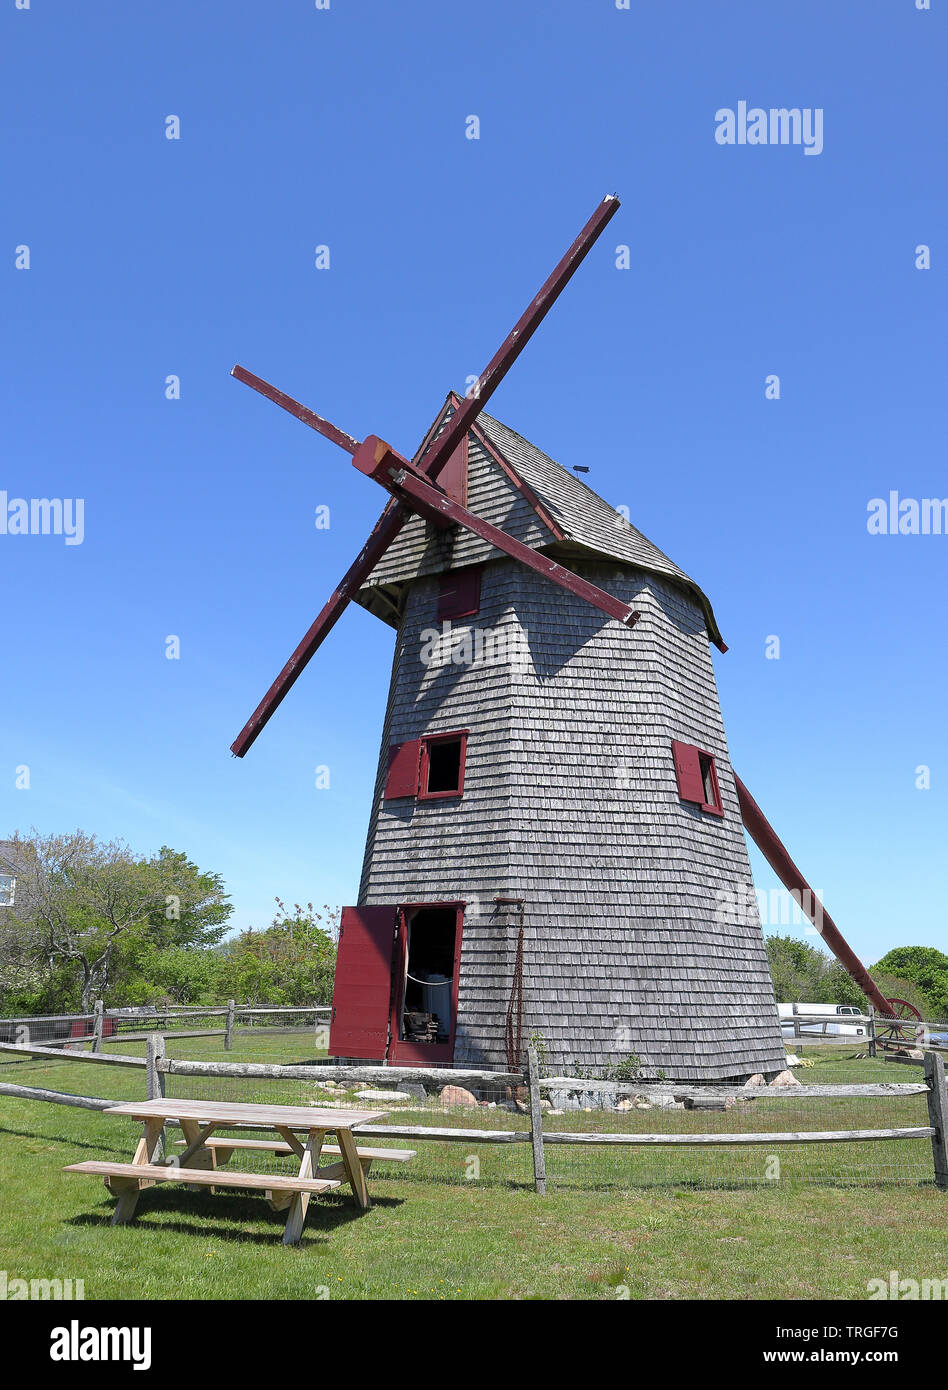 Ancien moulin, le plus vieux moulin à vent en bois qui fonctionne aux États-Unis servant à moudre le maïs. Nantucket, Massachusetts Banque D'Images